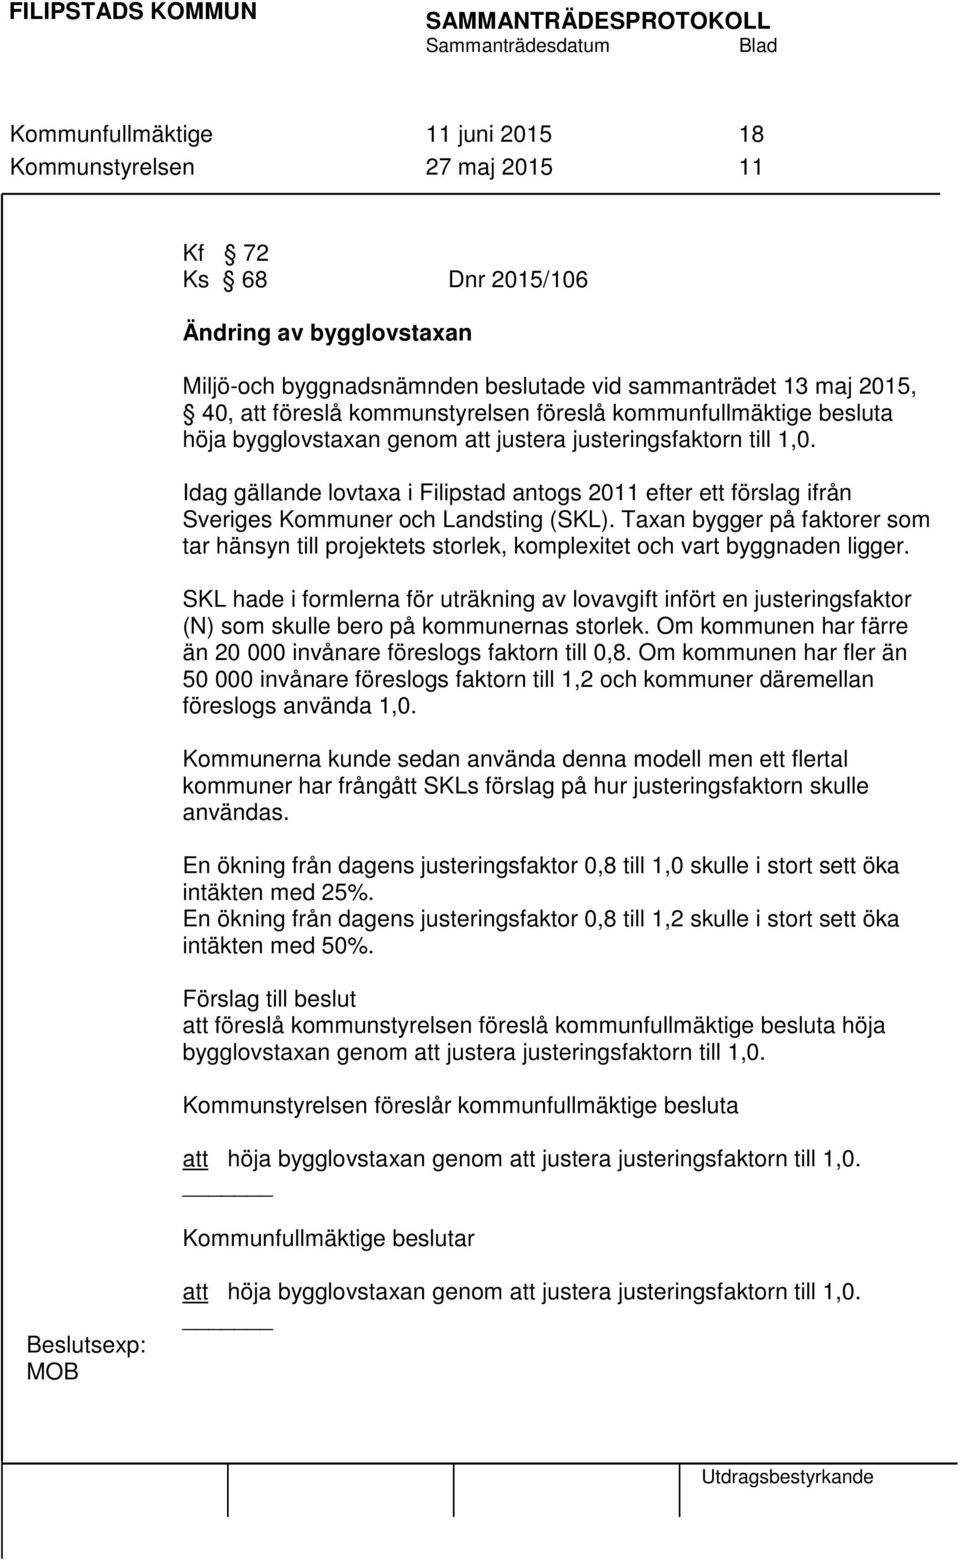 Idag gällande lovtaxa i Filipstad antogs 2011 efter ett förslag ifrån Sveriges Kommuner och Landsting (SKL).